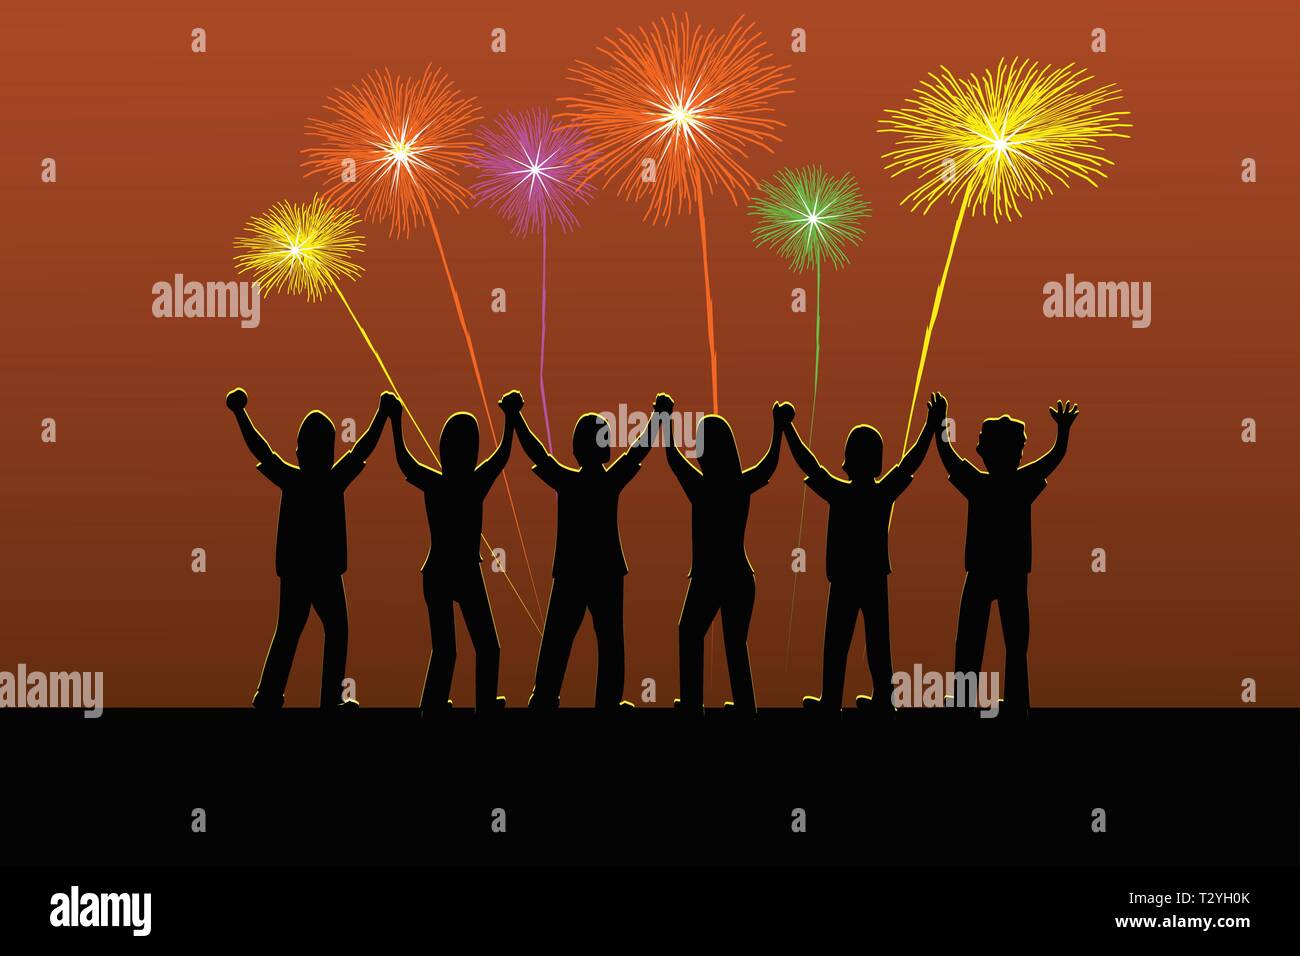 Silhouette di sei persone sono tenendo le mani volentieri quando ci sono i fuochi d'artificio fulmini nel cielo. Illustrazione Vettoriale